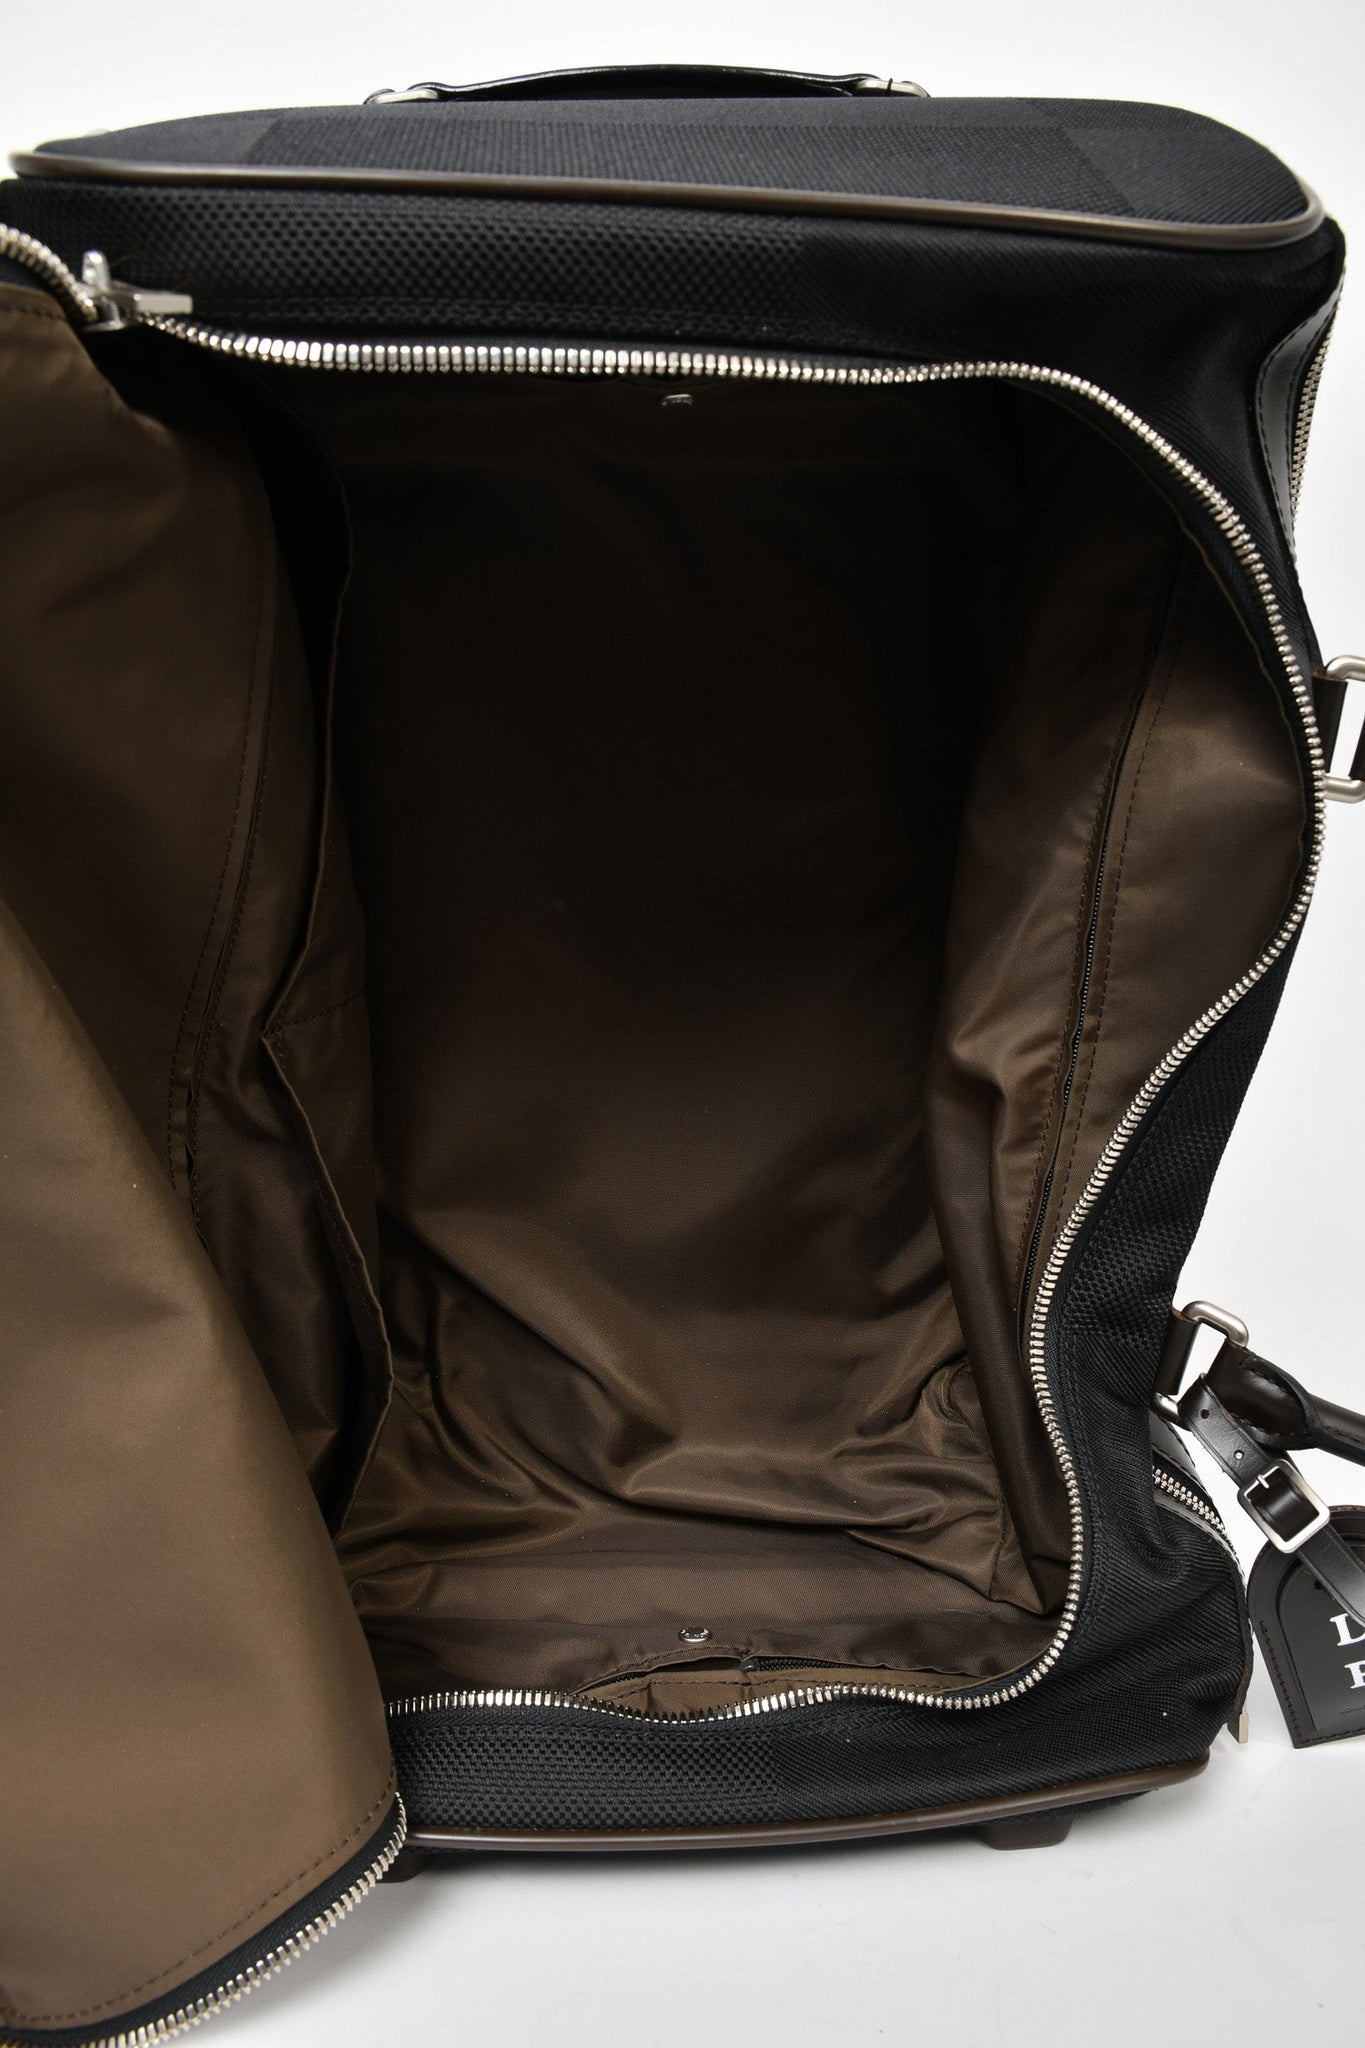 Louis Vuitton 2011 Black Damier Geant Eole 50 Rolling Duffle Bag